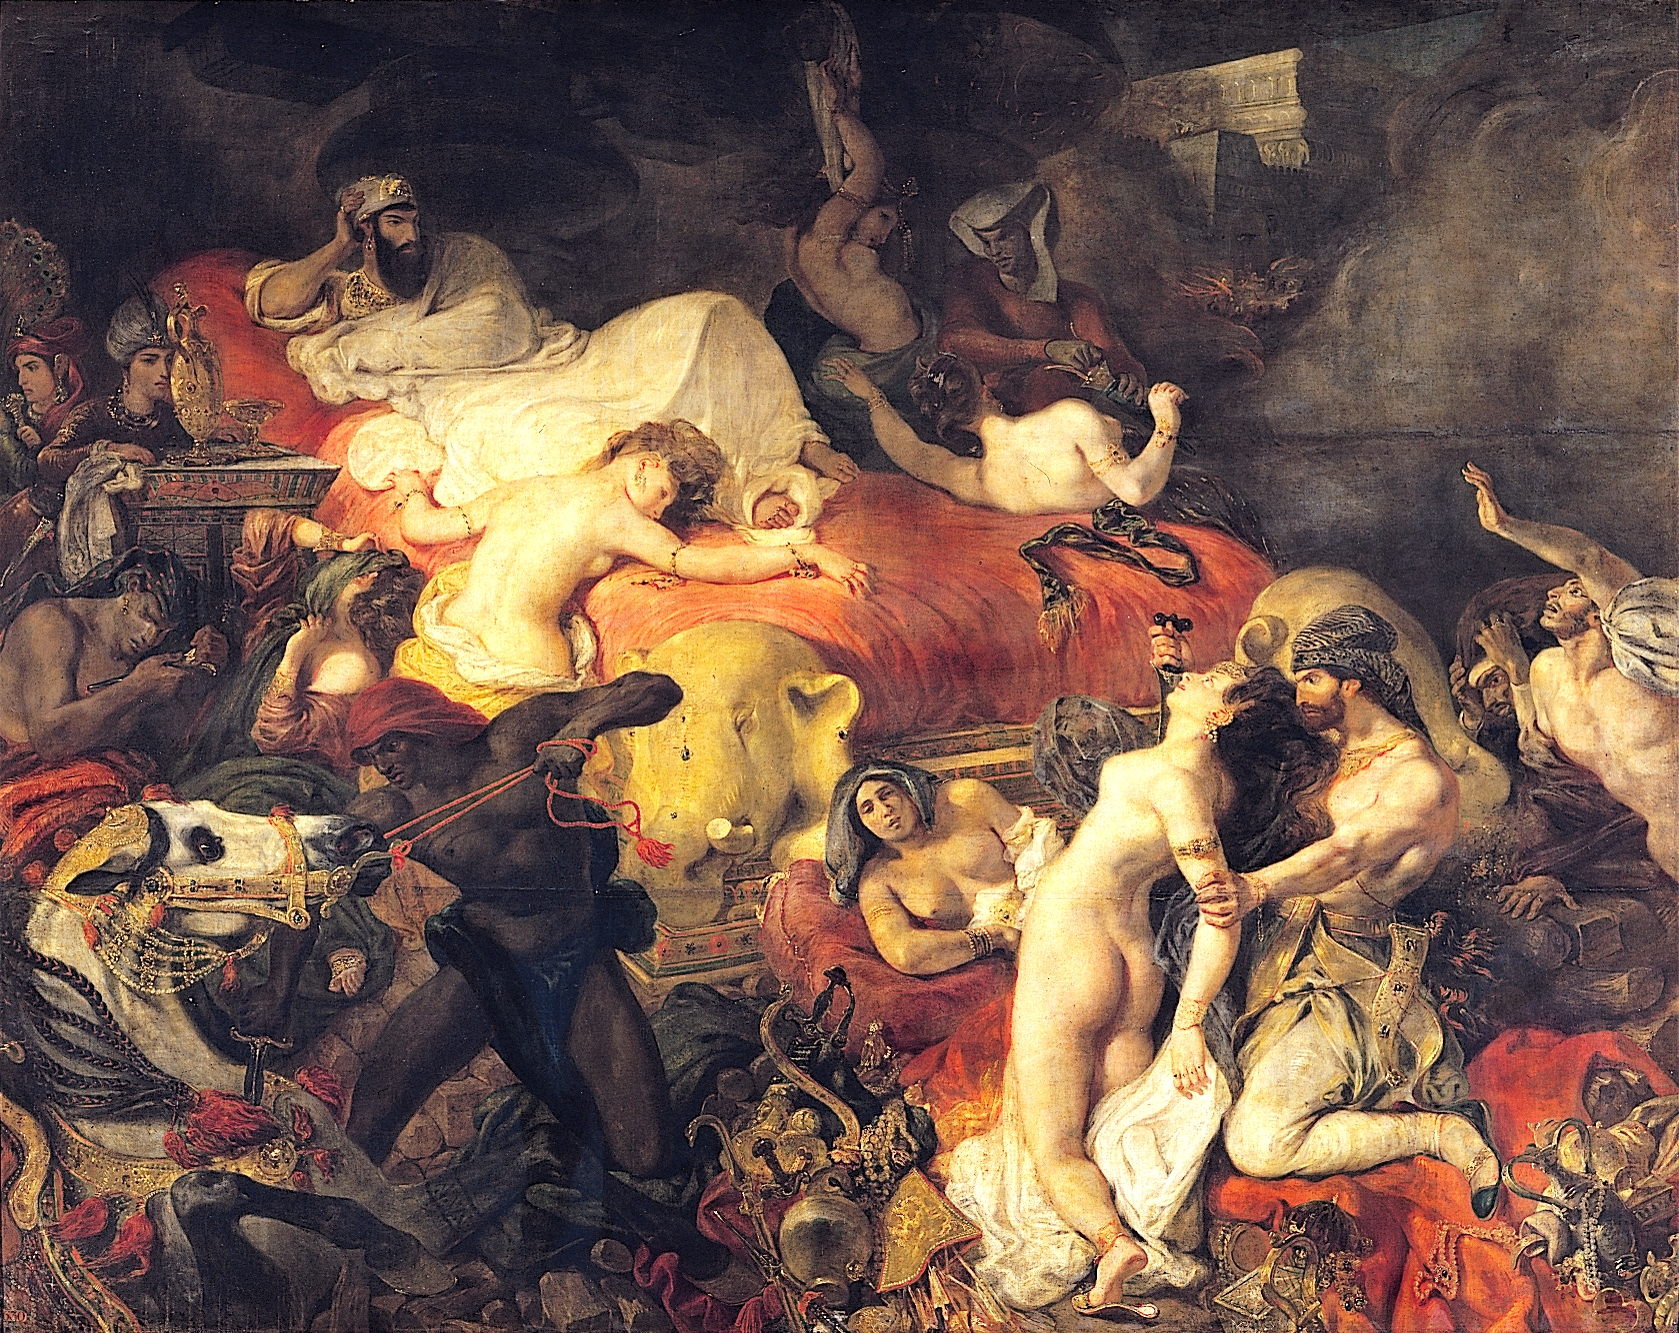 Der Tod von Sardanapalus by Eugène Delacroix - 1827 - 392 x 496 cm Musée du Louvre